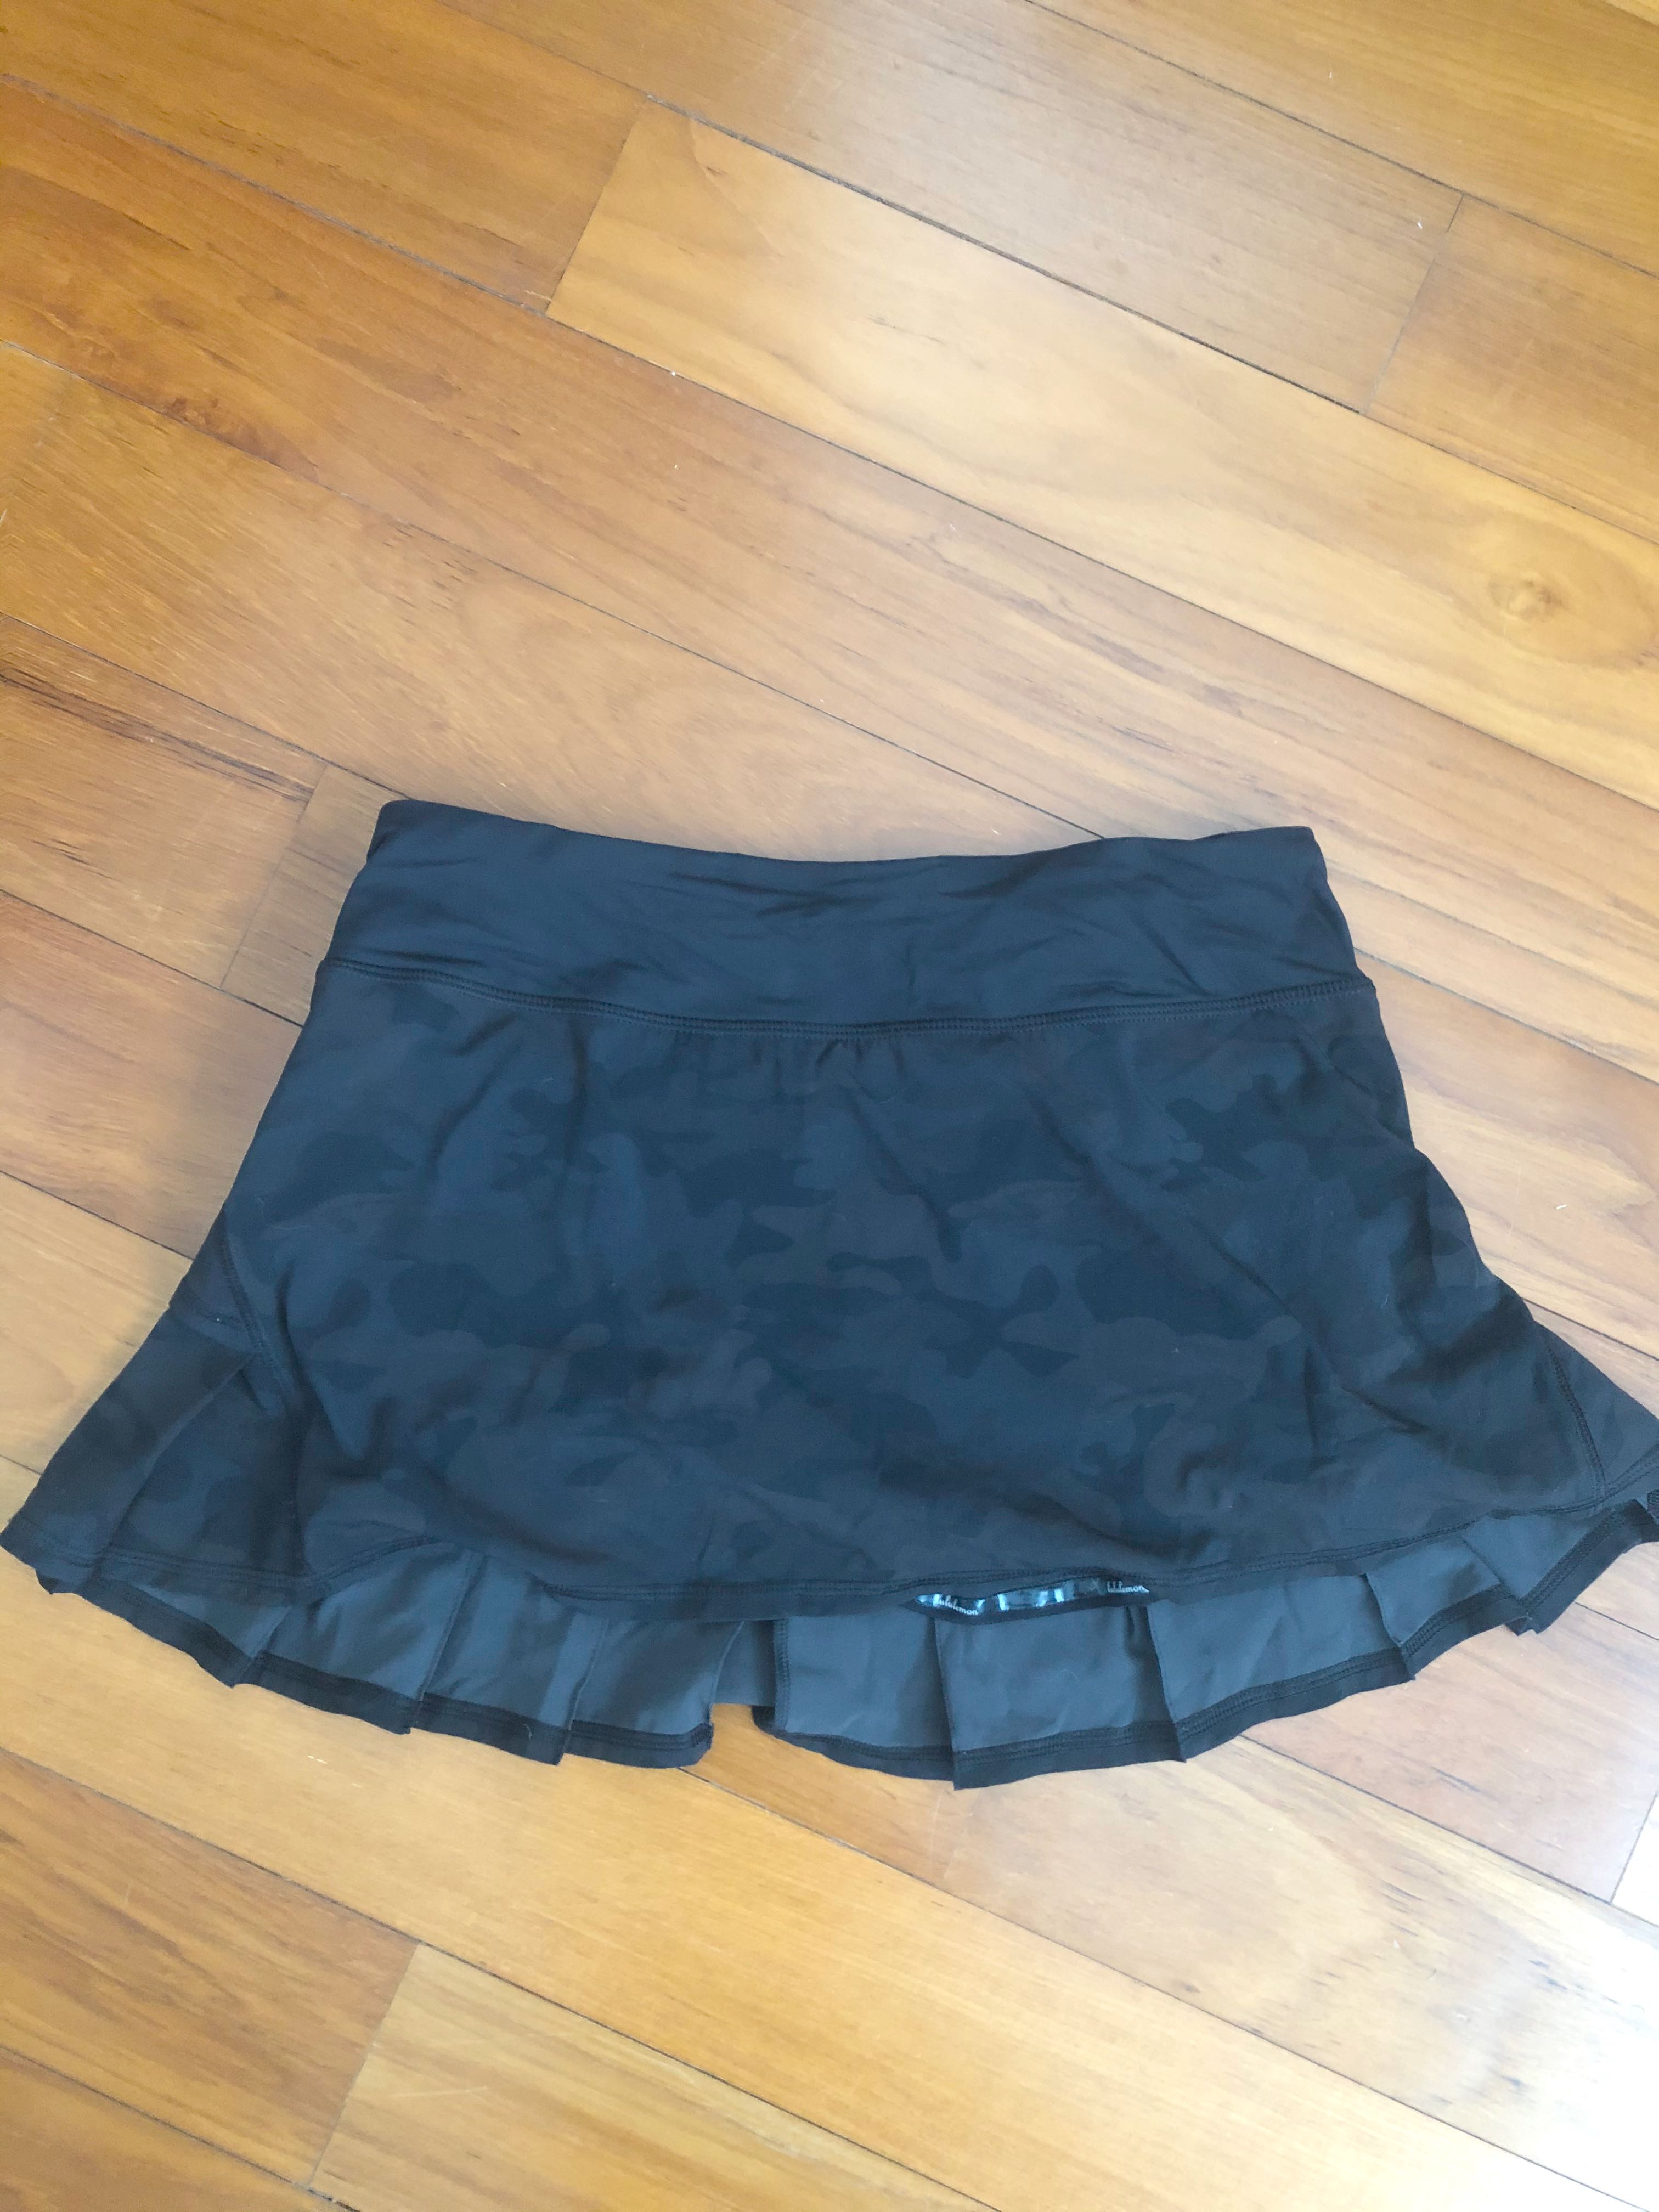 lululemon tennis skirt